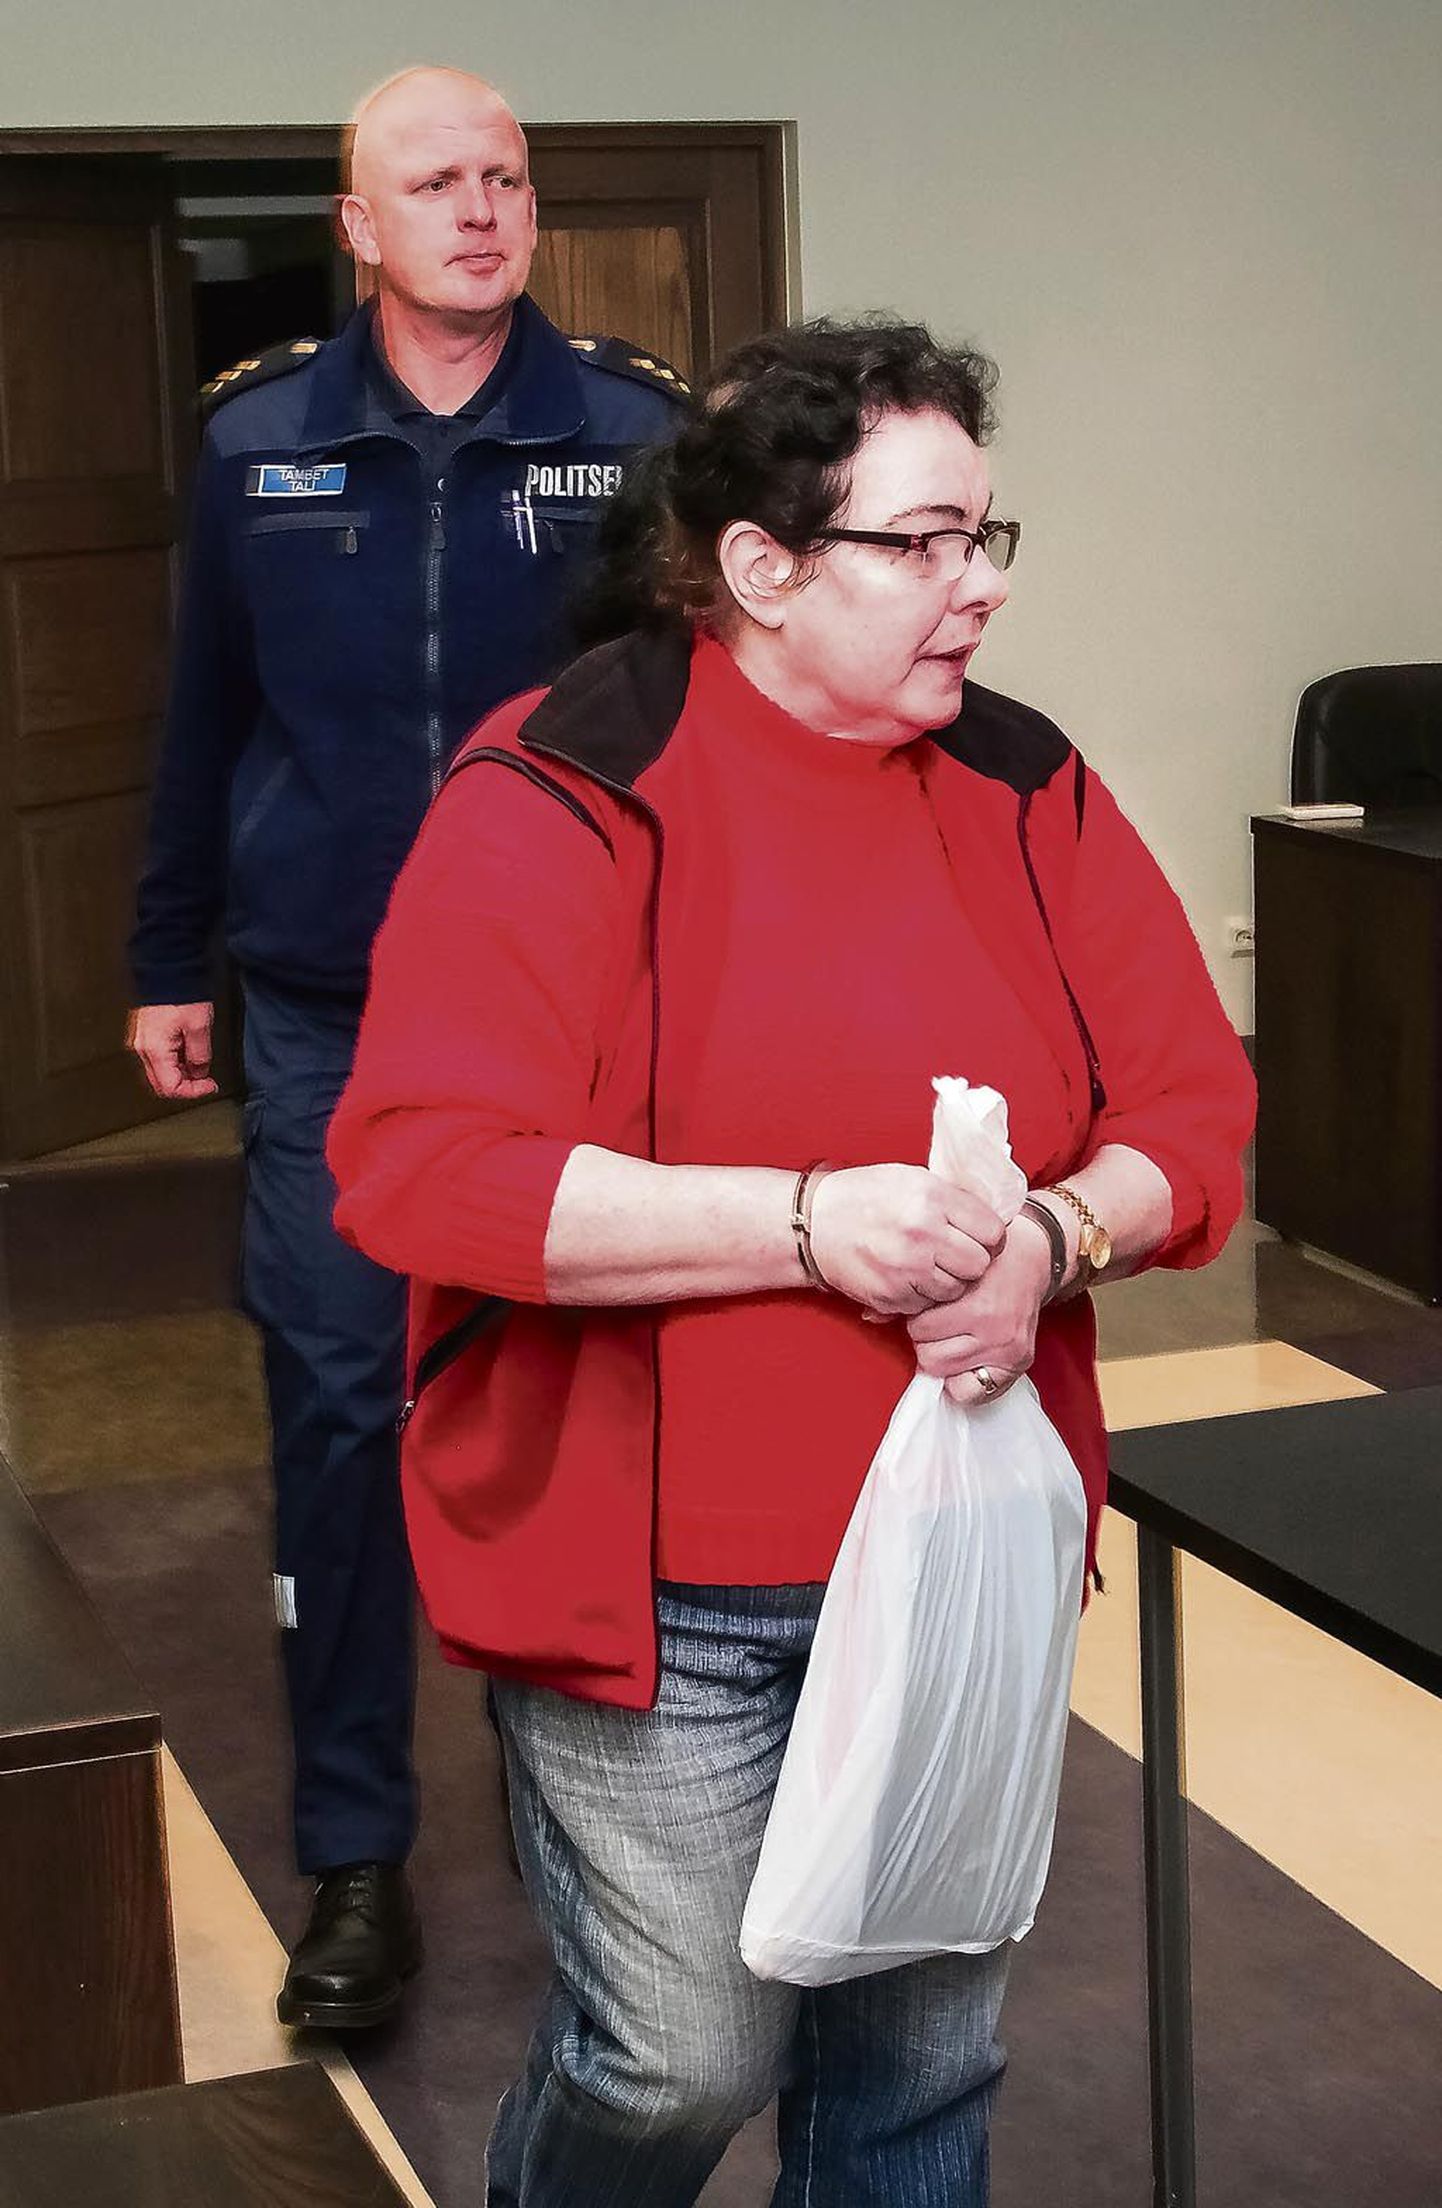 Marika Heikkilä pakkus ühele mehele oma abikaasa tapmise eest 20 000 ja teisele 50 000 eurot.